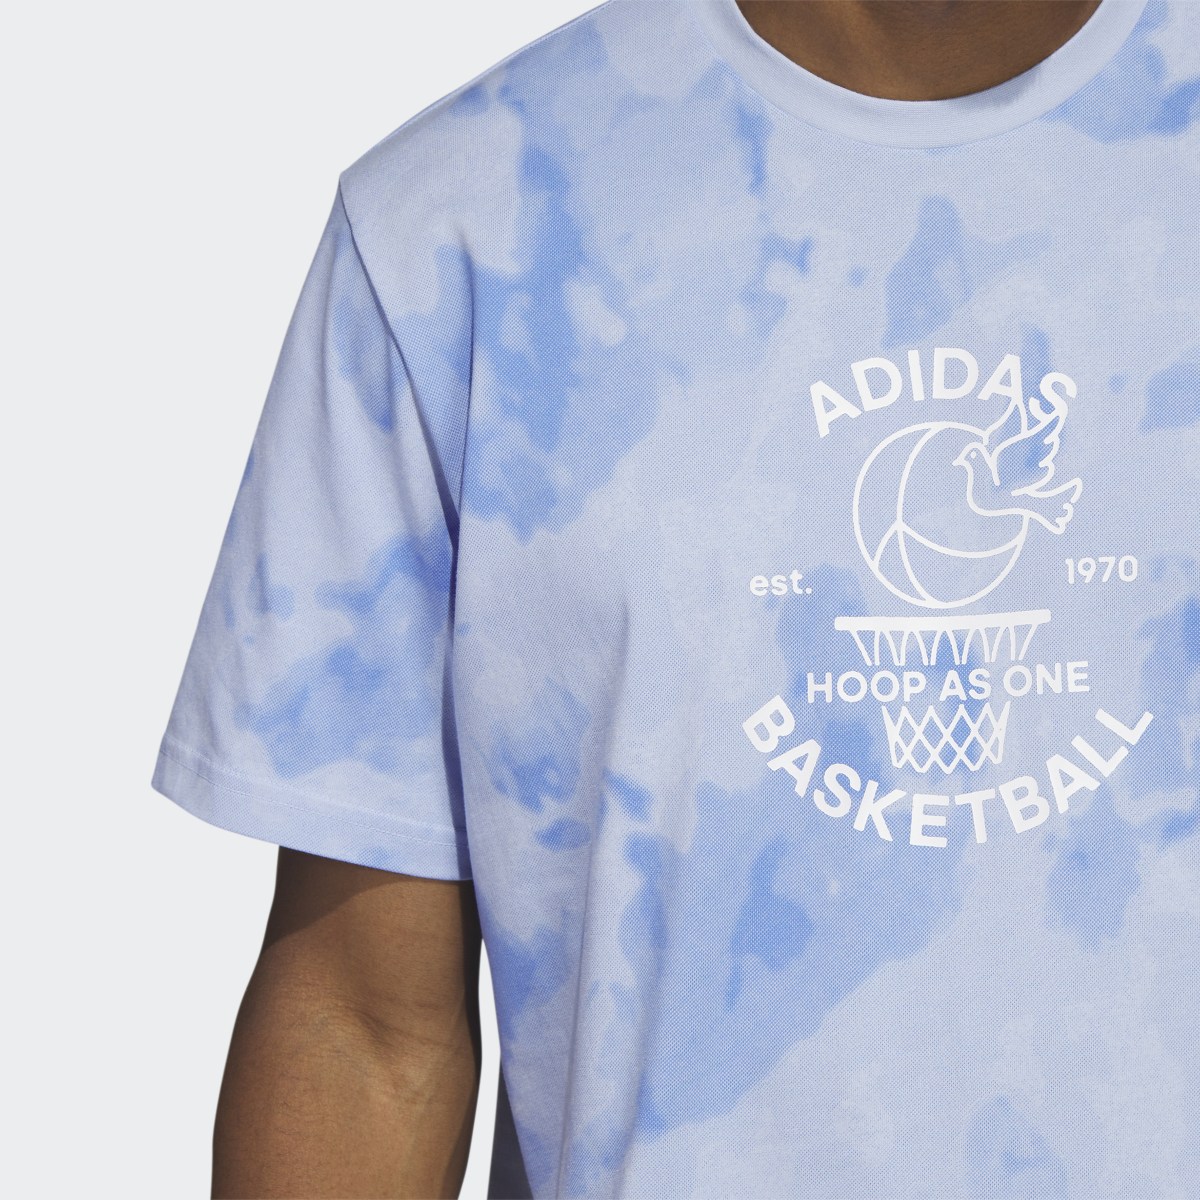 Adidas Worldwide Hoops Basketball Graphic Tee. 6